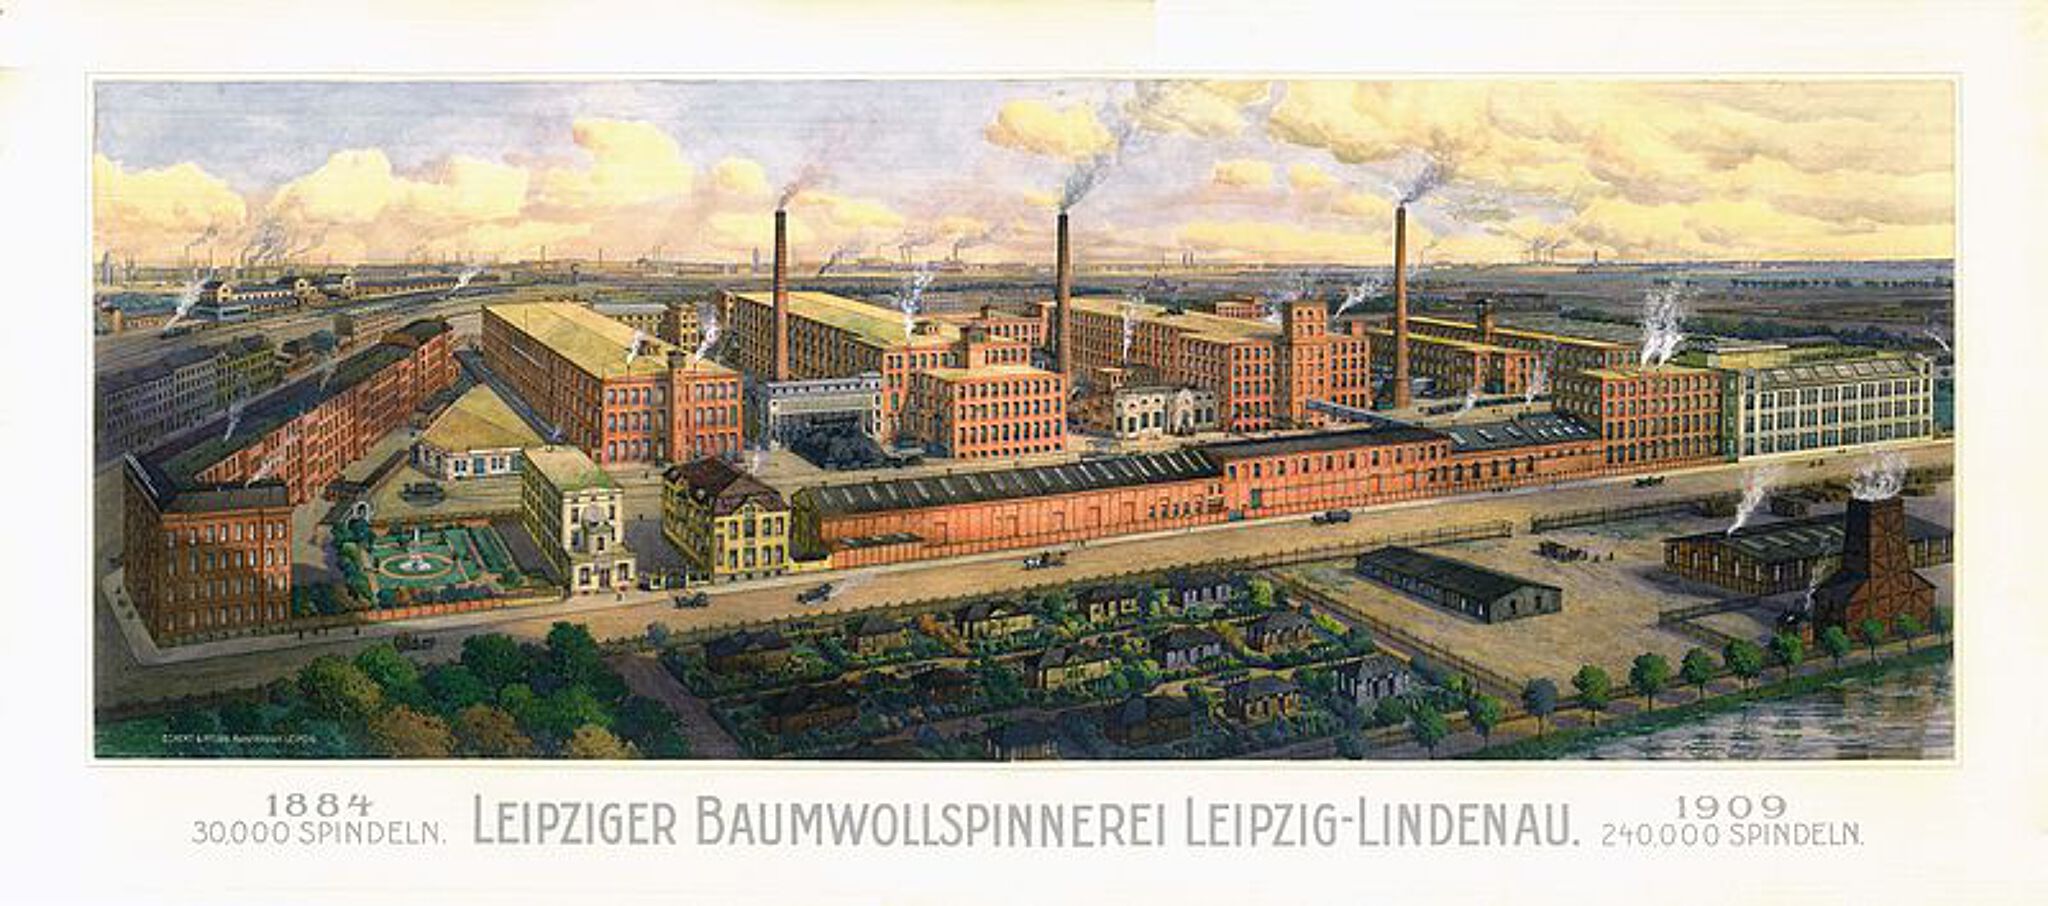 &mdash;Leipziger Baumwollspinnerei